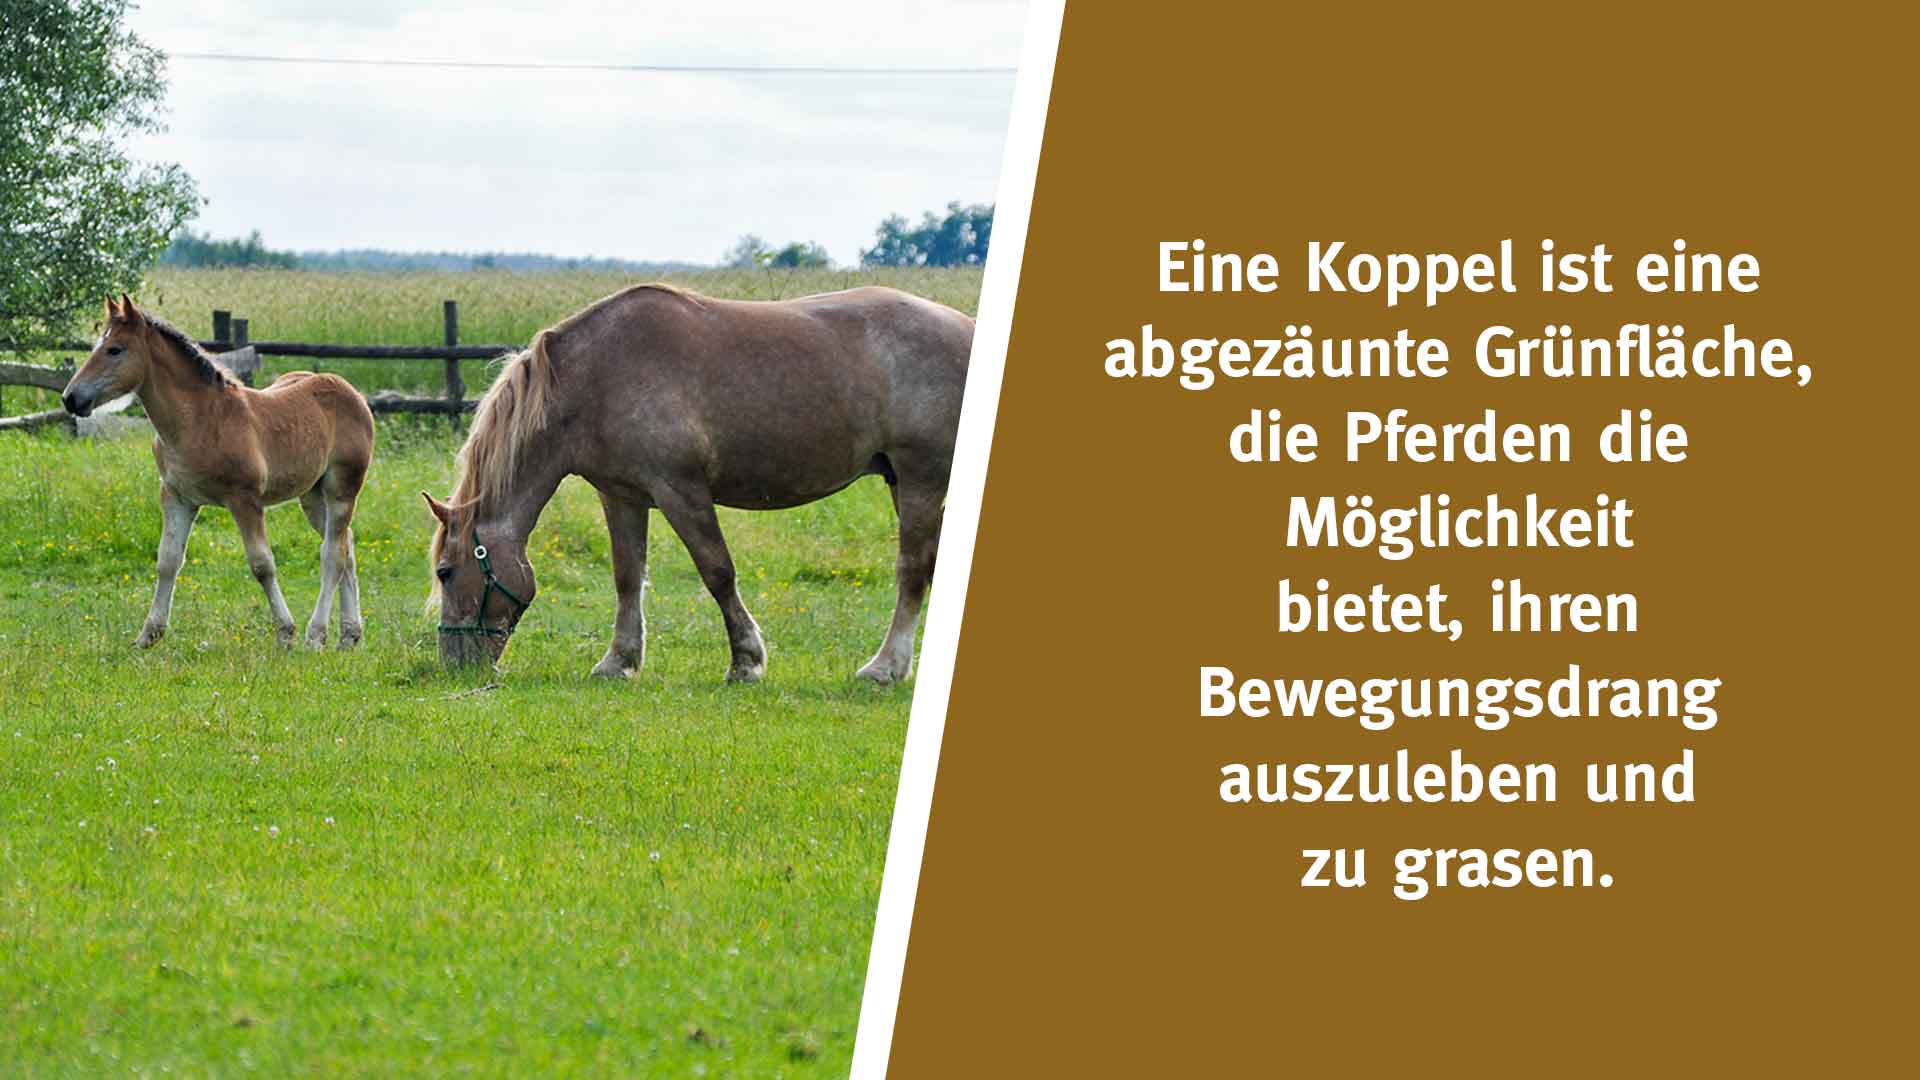 Eine Koppel ist eine abgezäunte Grünfläche, die Pferden die Möglichkeit bietet, sich an der frischen Luft zu erholen, ihren Bewegungsdrang auszuleben und zu grasen.